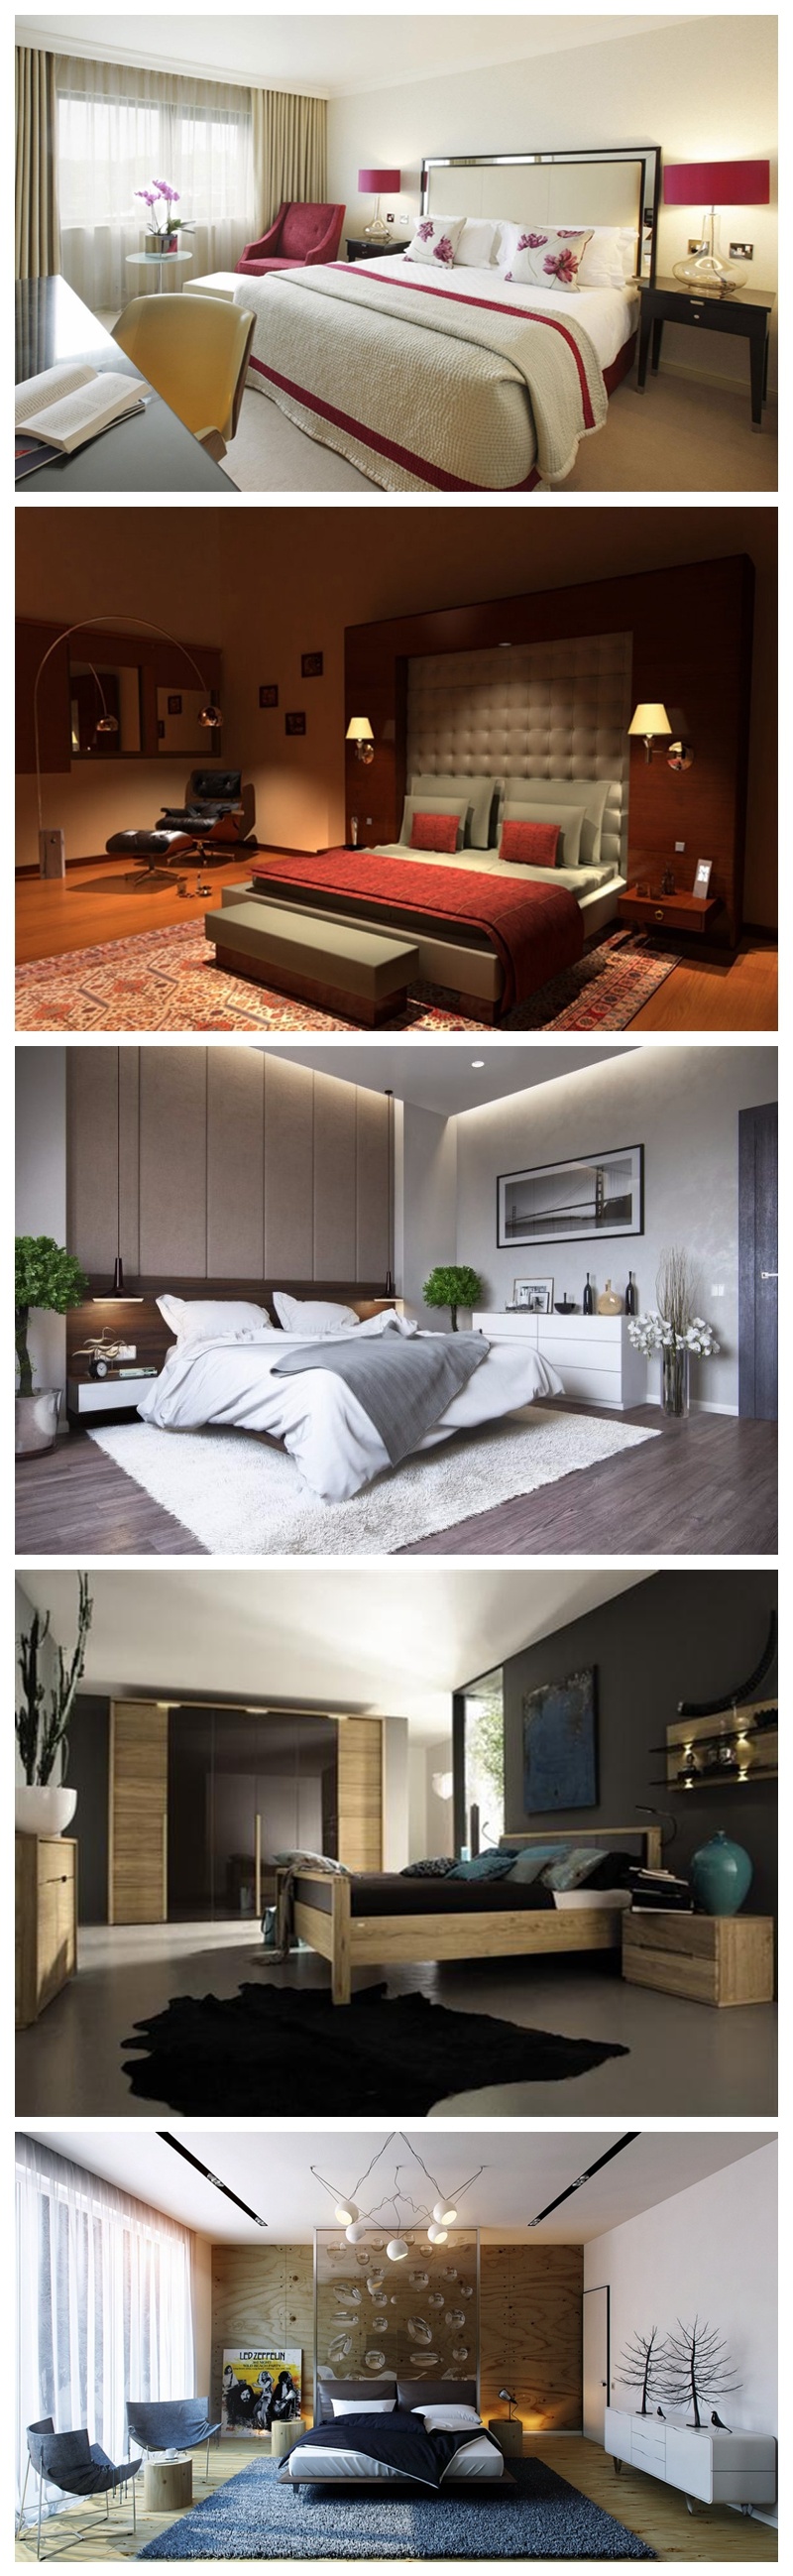 Latest Design Artistical Style Hotel Bedroom Furniture Sets for Sale